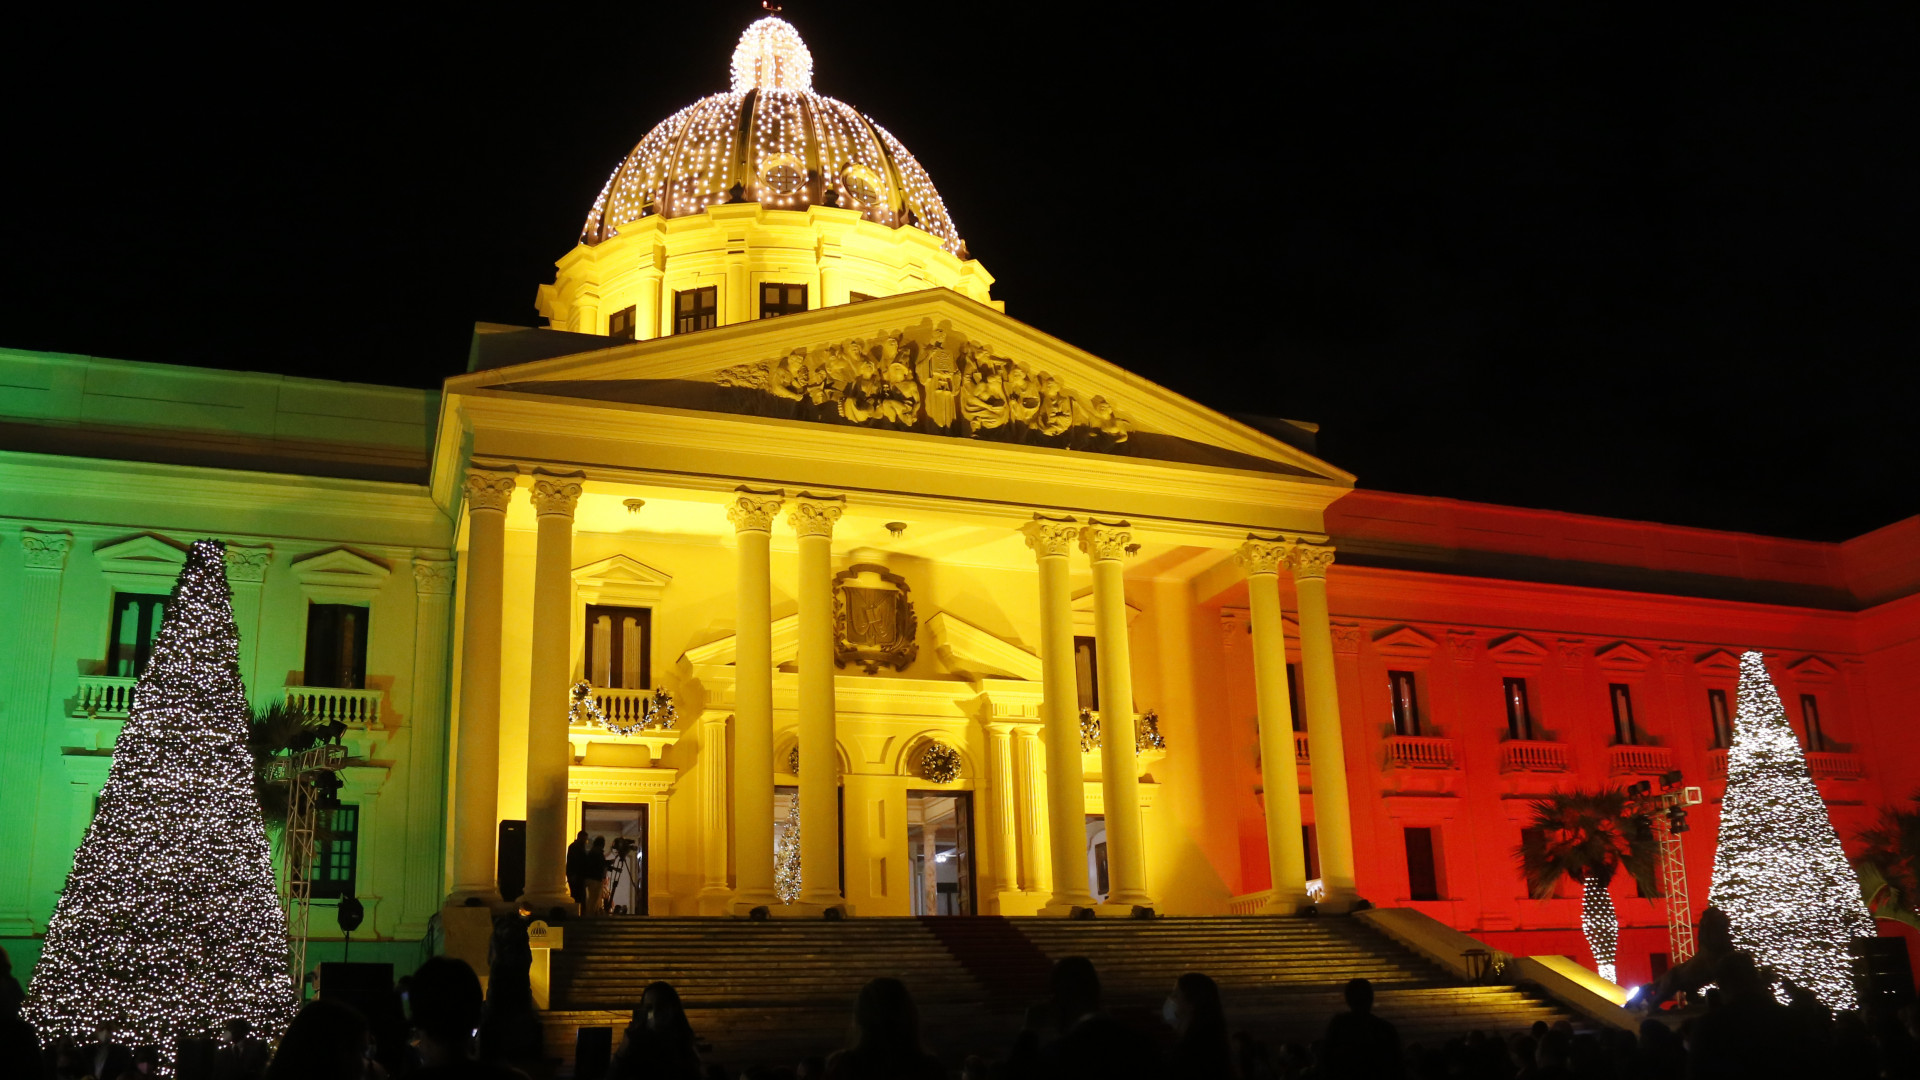 REPÚBLICA DOMINICANA: Inicia la Navidad en el Palacio Nacional con el encendido del árbol